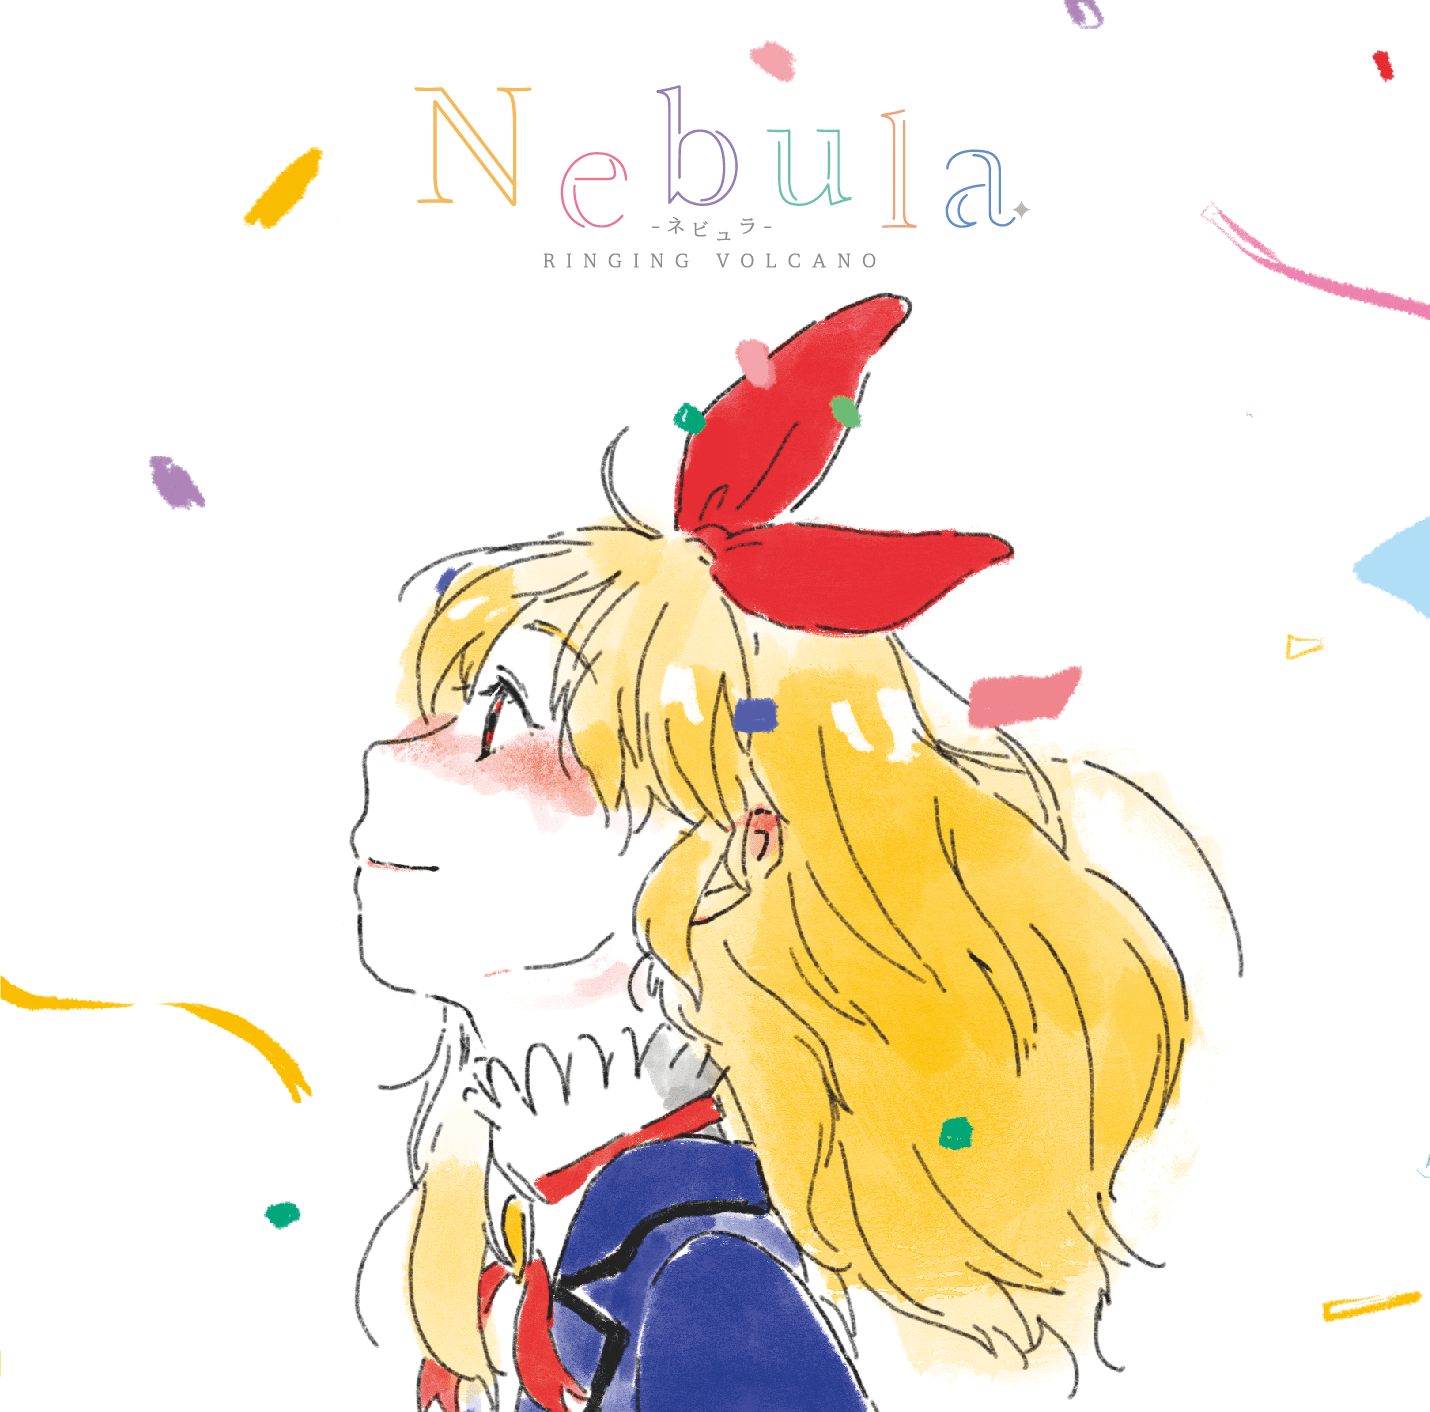 Nebula -ネビュラ-